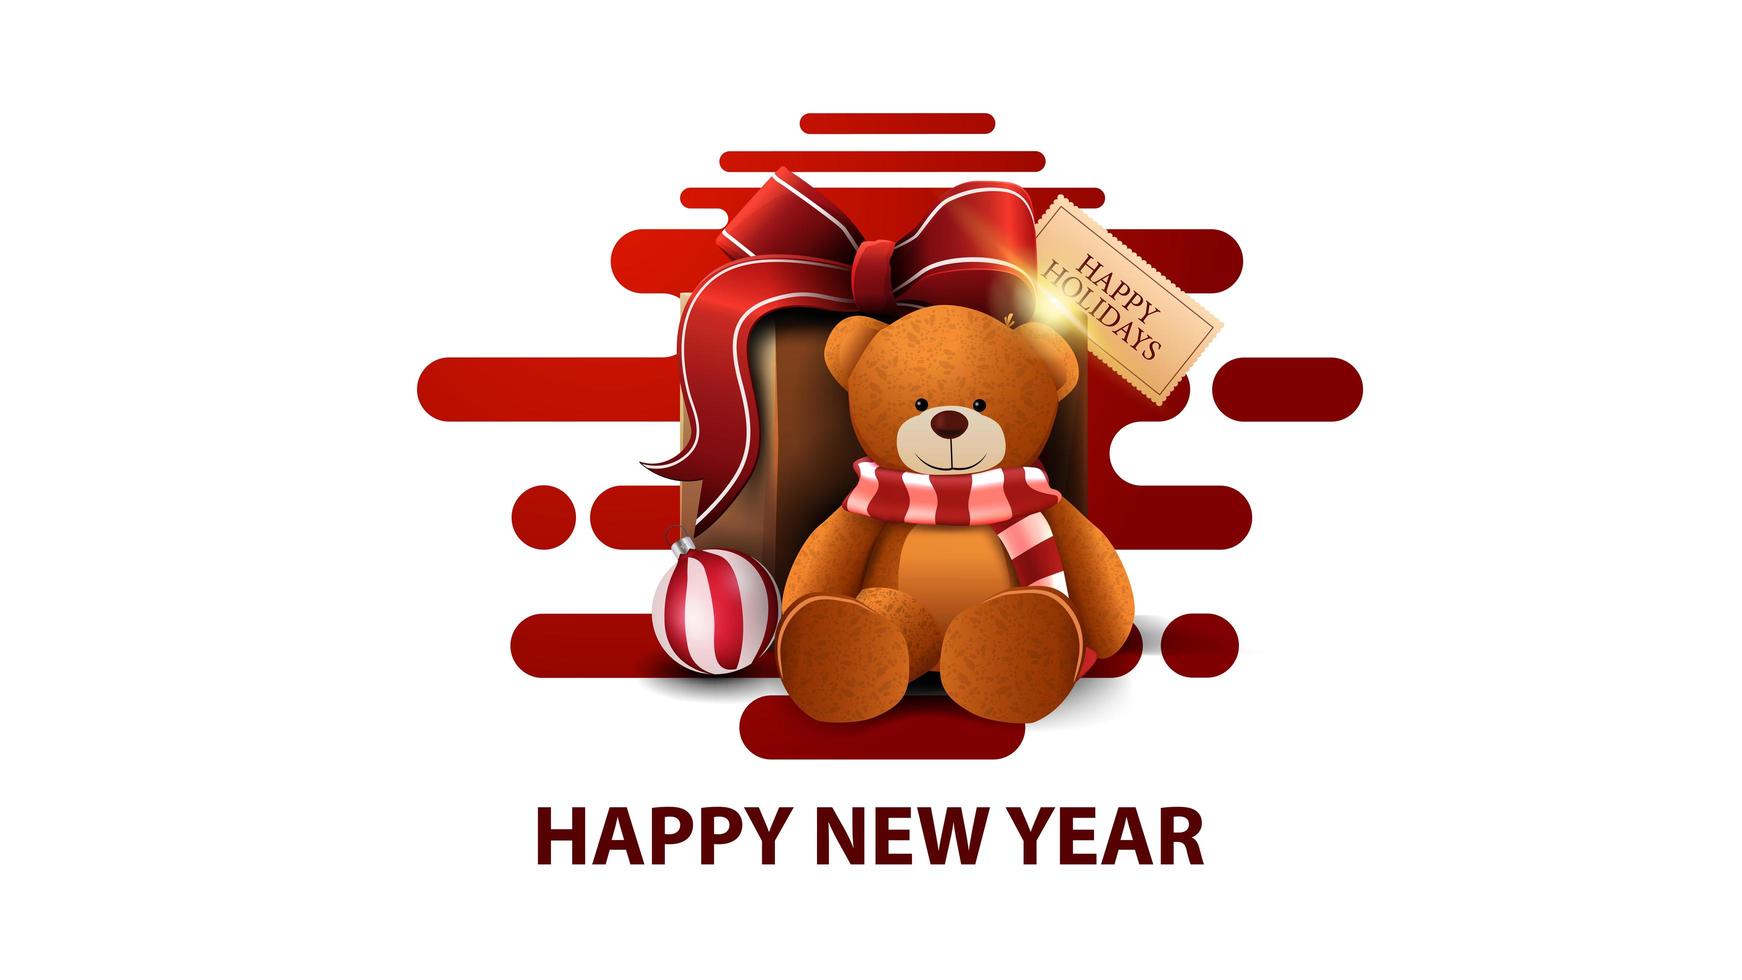 felice anno nuovo, cartolina moderna bianca con forme liquide astratte rosse e presente con orsacchiotto vettore